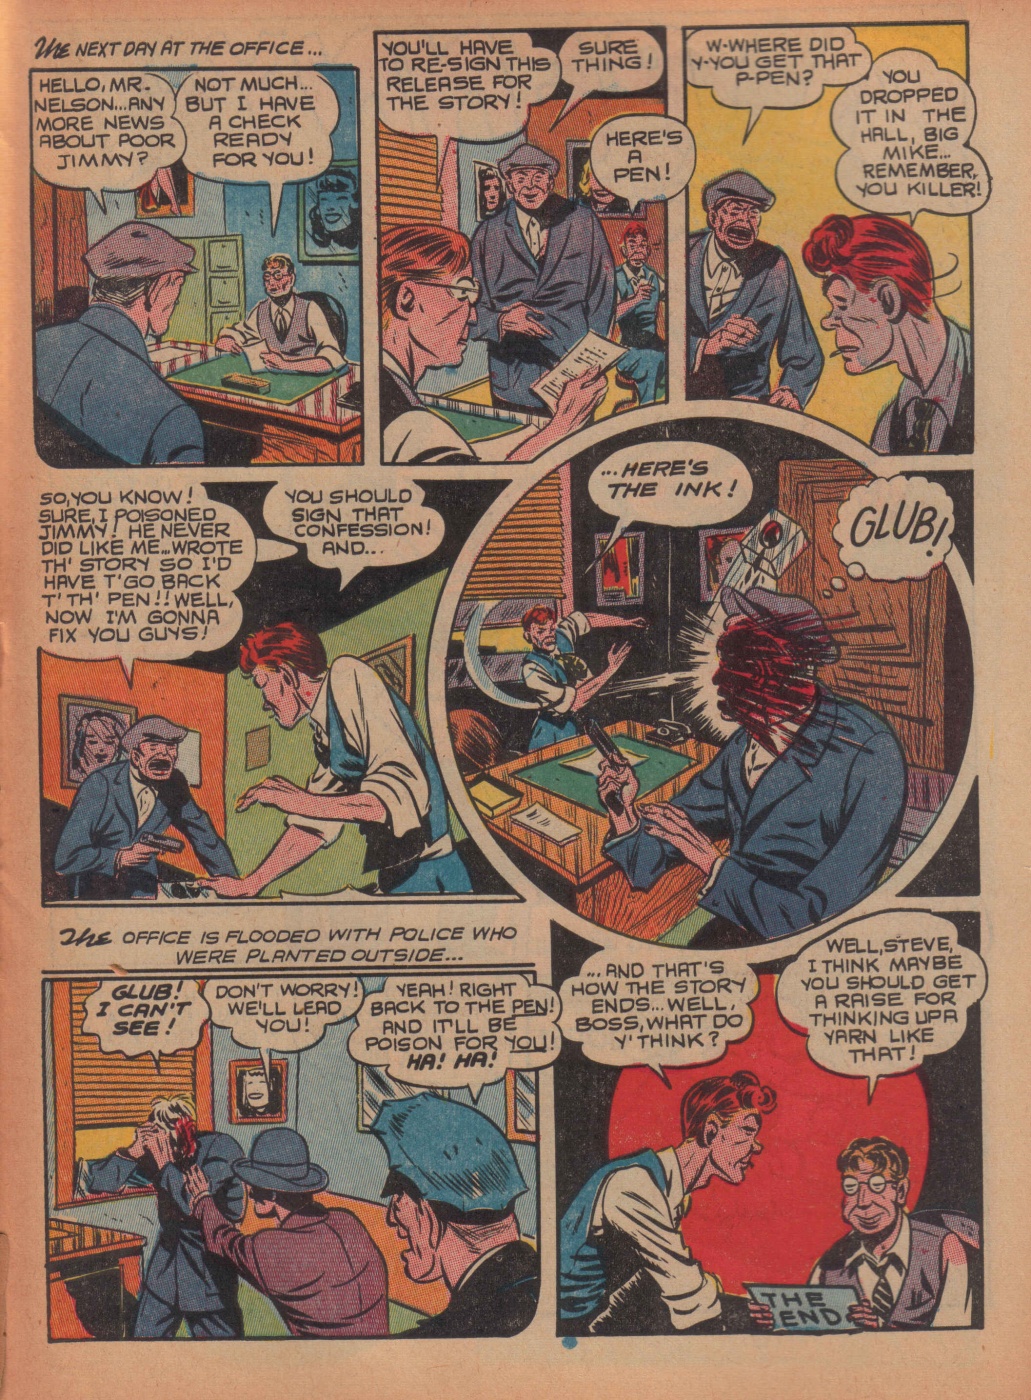 Super Dooper Funny Comics (23)